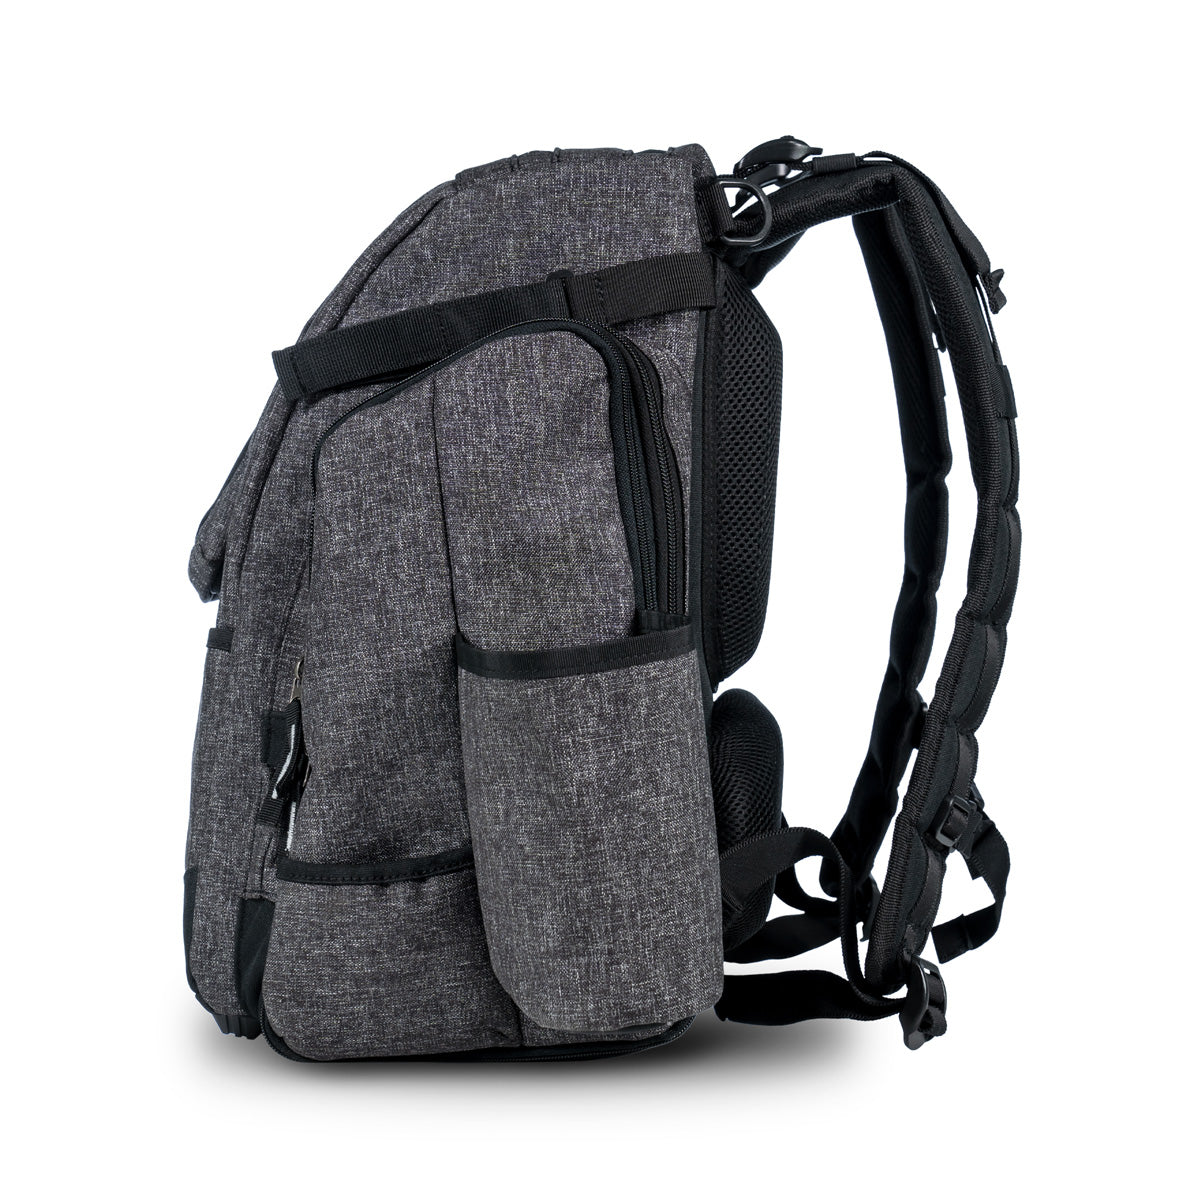 Innova Super HeroPack II Backpack Disc Golf Bag - Black Heather - Innova